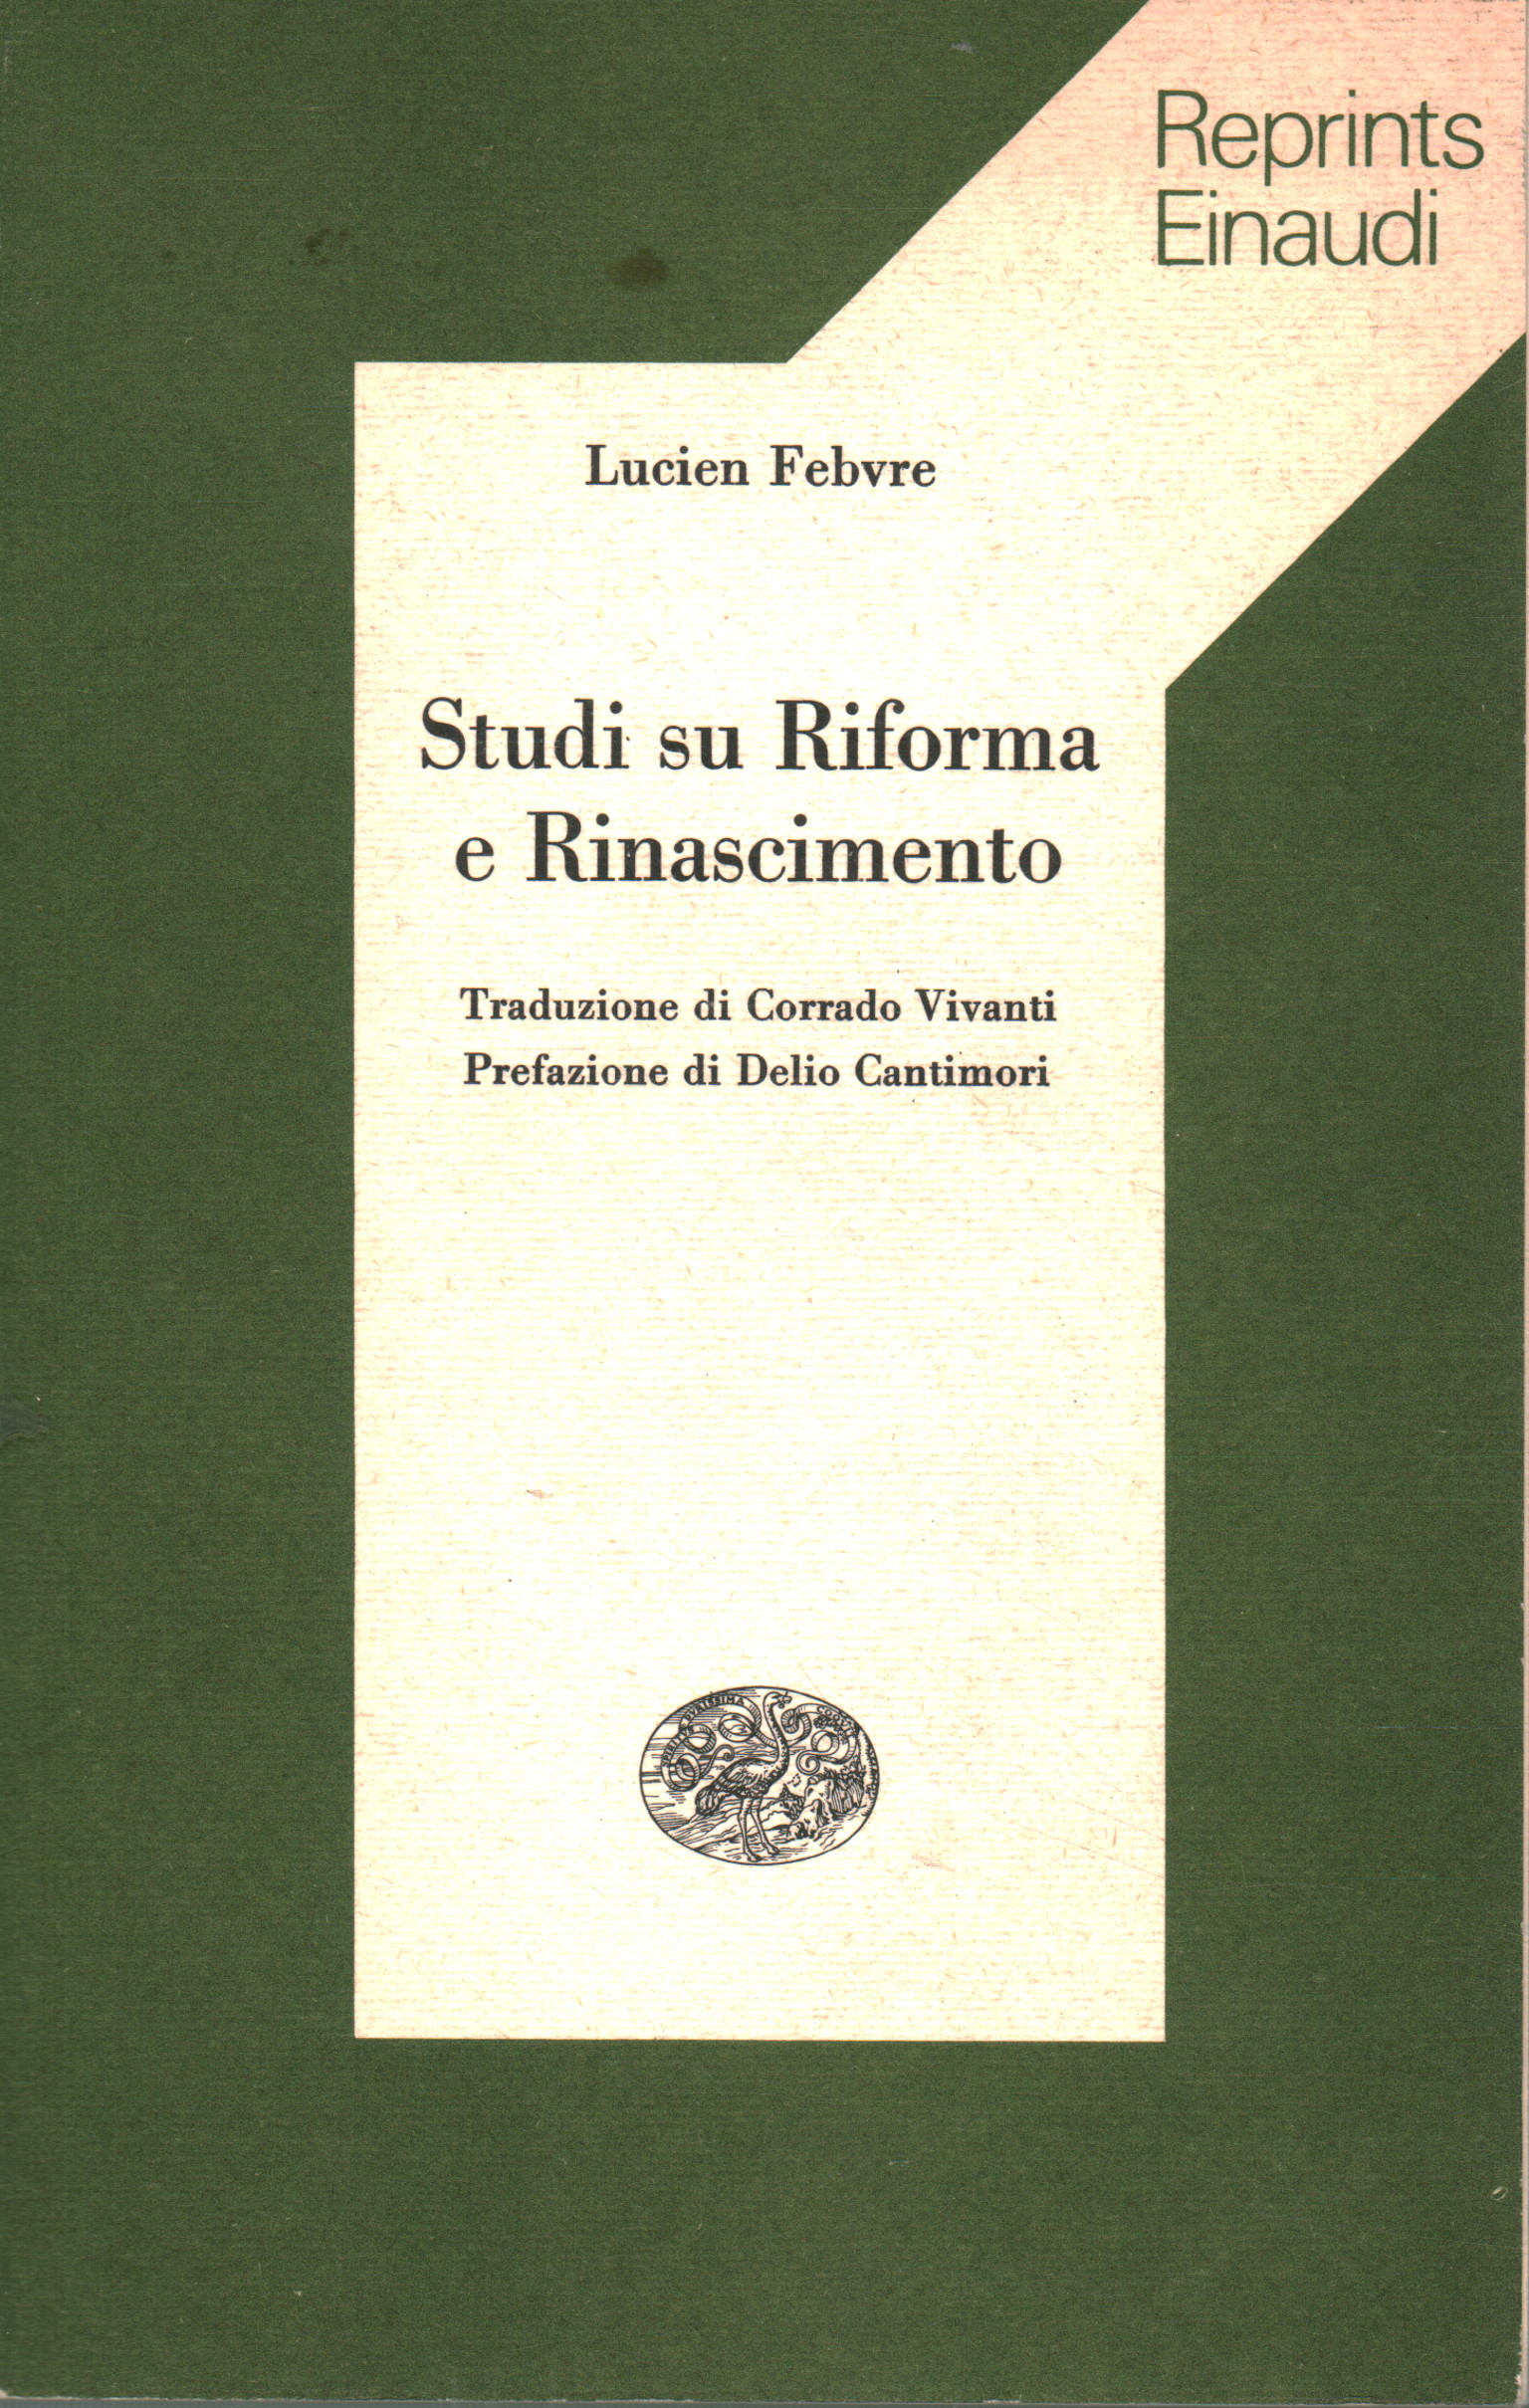 Studien zur Reformation und Renaissance, Lucien Febvre